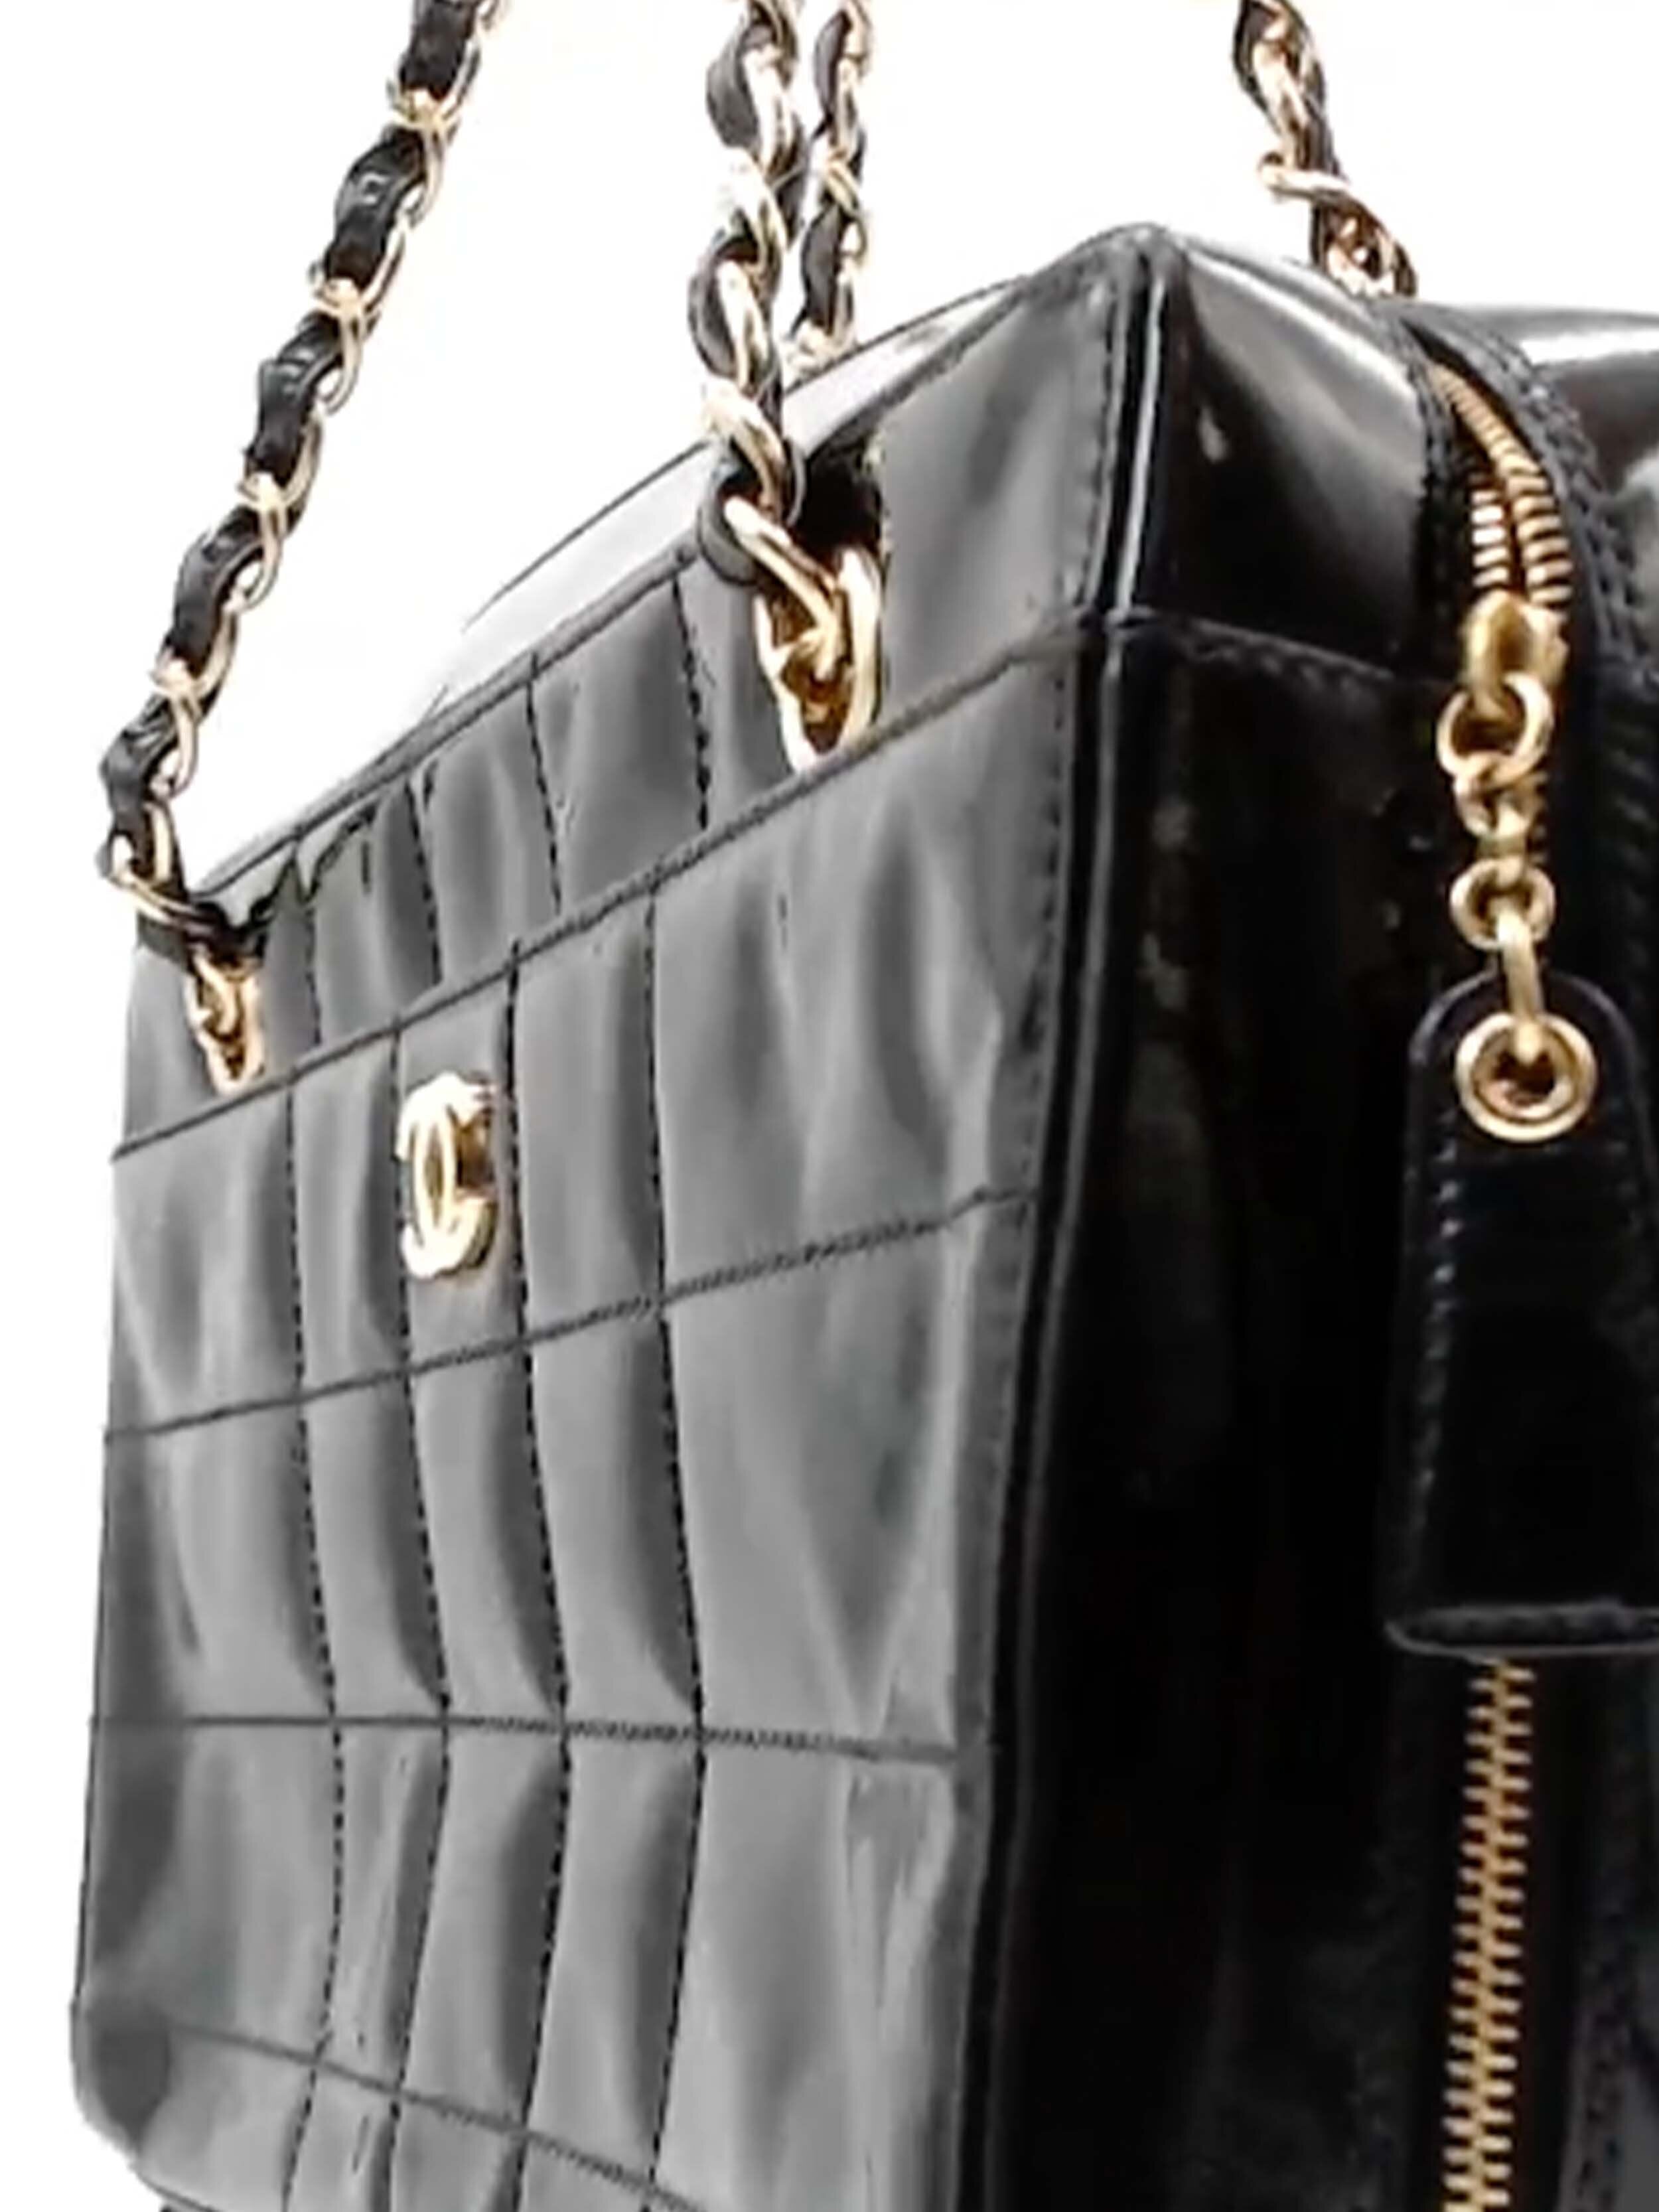 Vintage Chanel Handbags